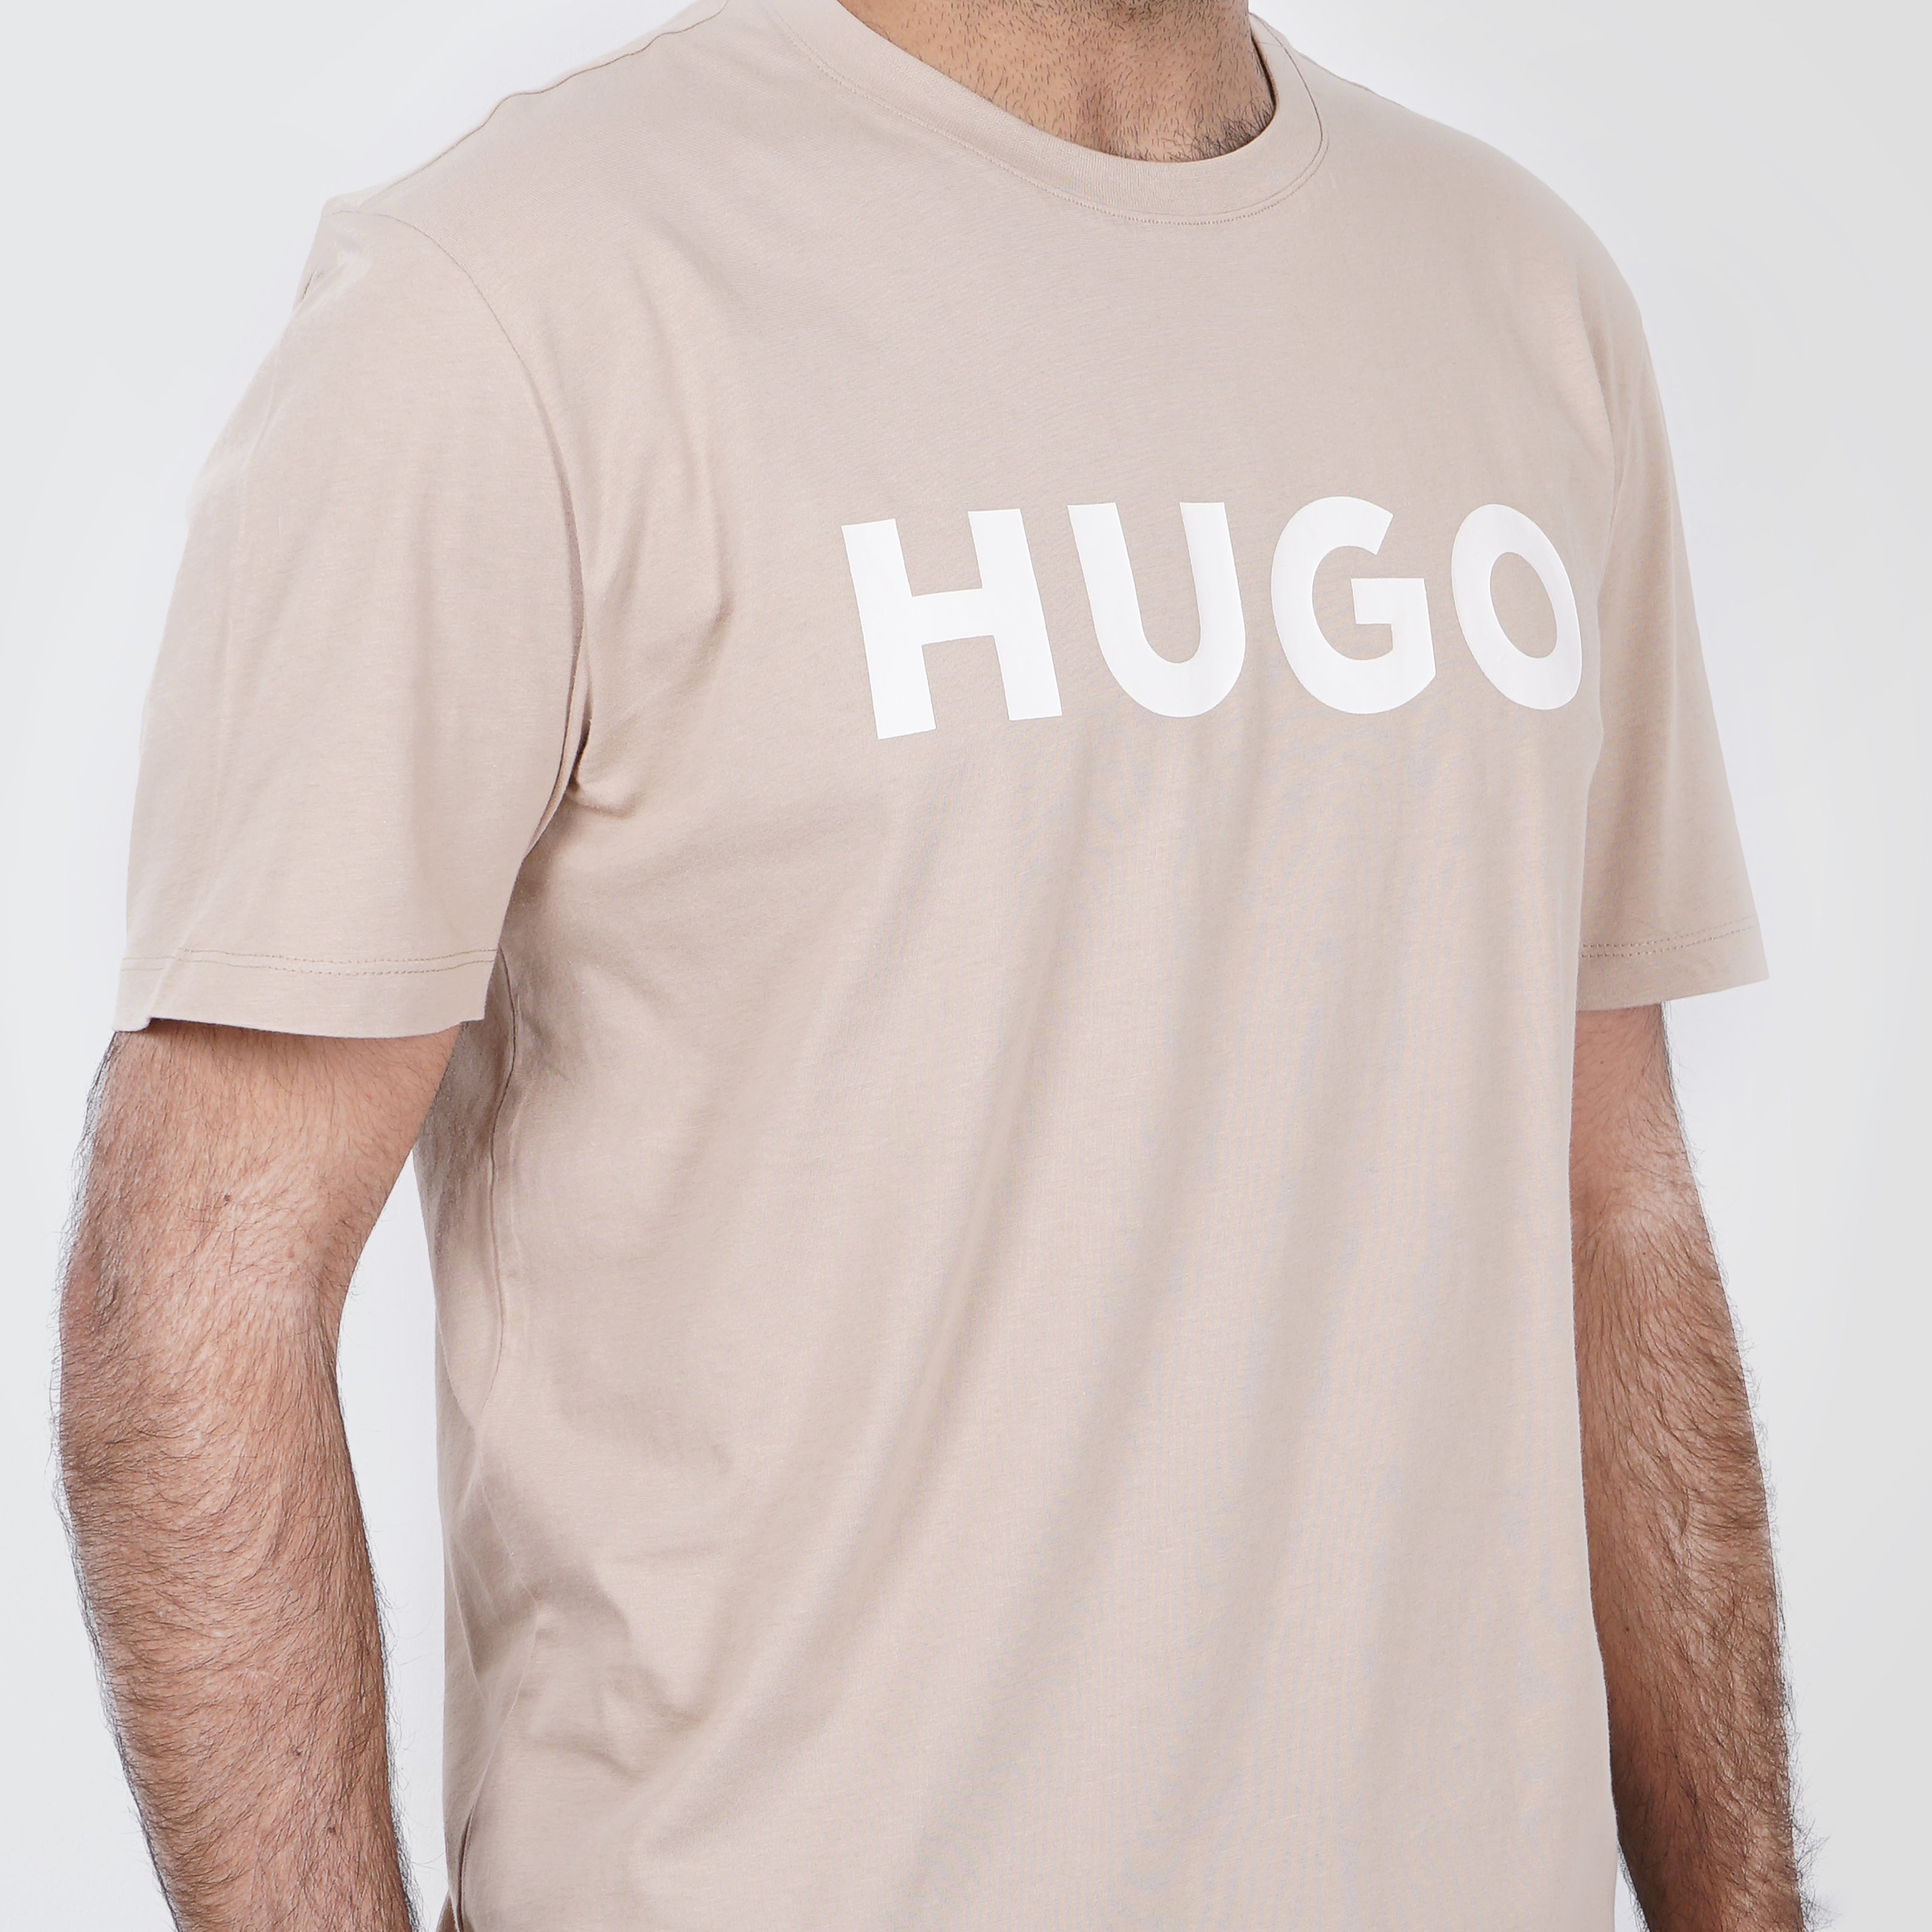 Original HUGO BOSS T-Shirt with White Logo - Marca Deals - Hugo Boss